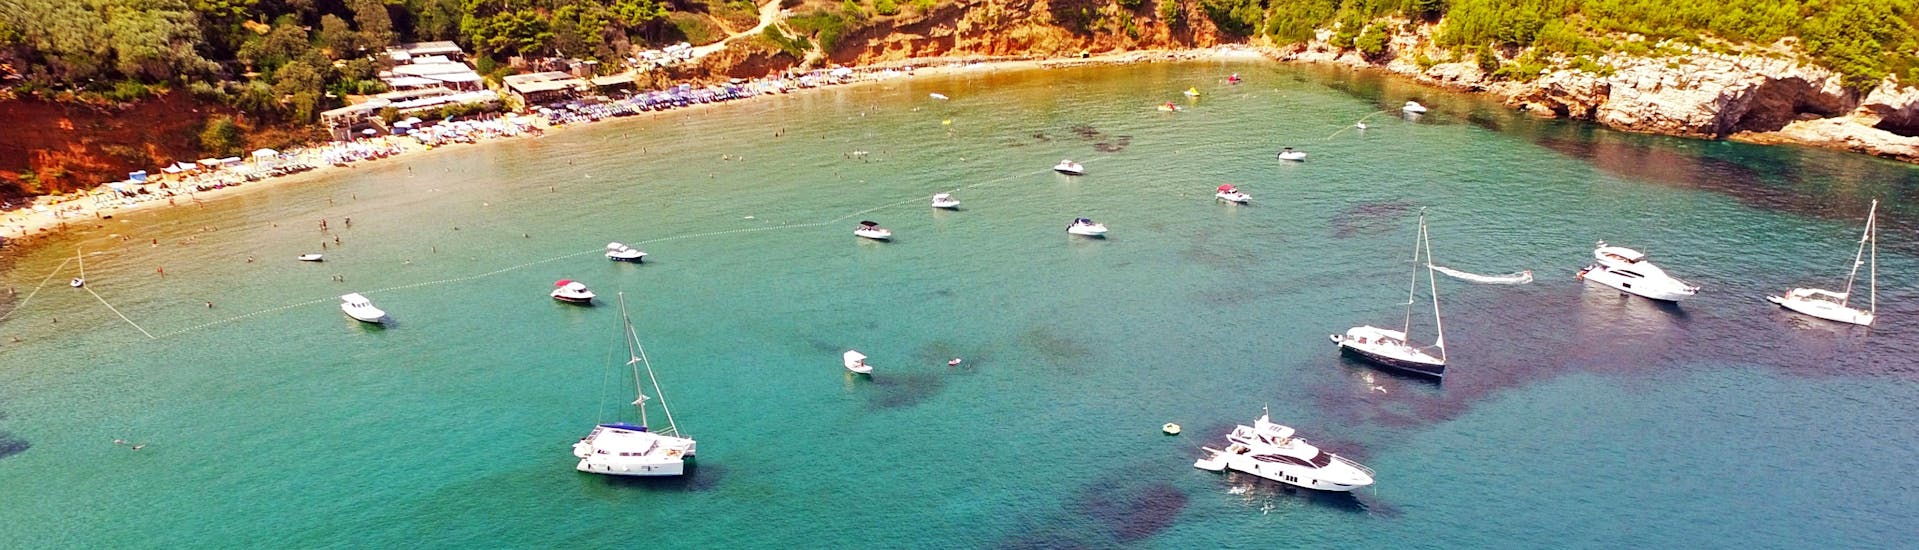 Uitzicht over de baai tijdens de privé boottocht van een hele dag van Dubrovnik naar de Elaphiti Eilanden georganiseerd door Snooky Tours Dubrovnik.